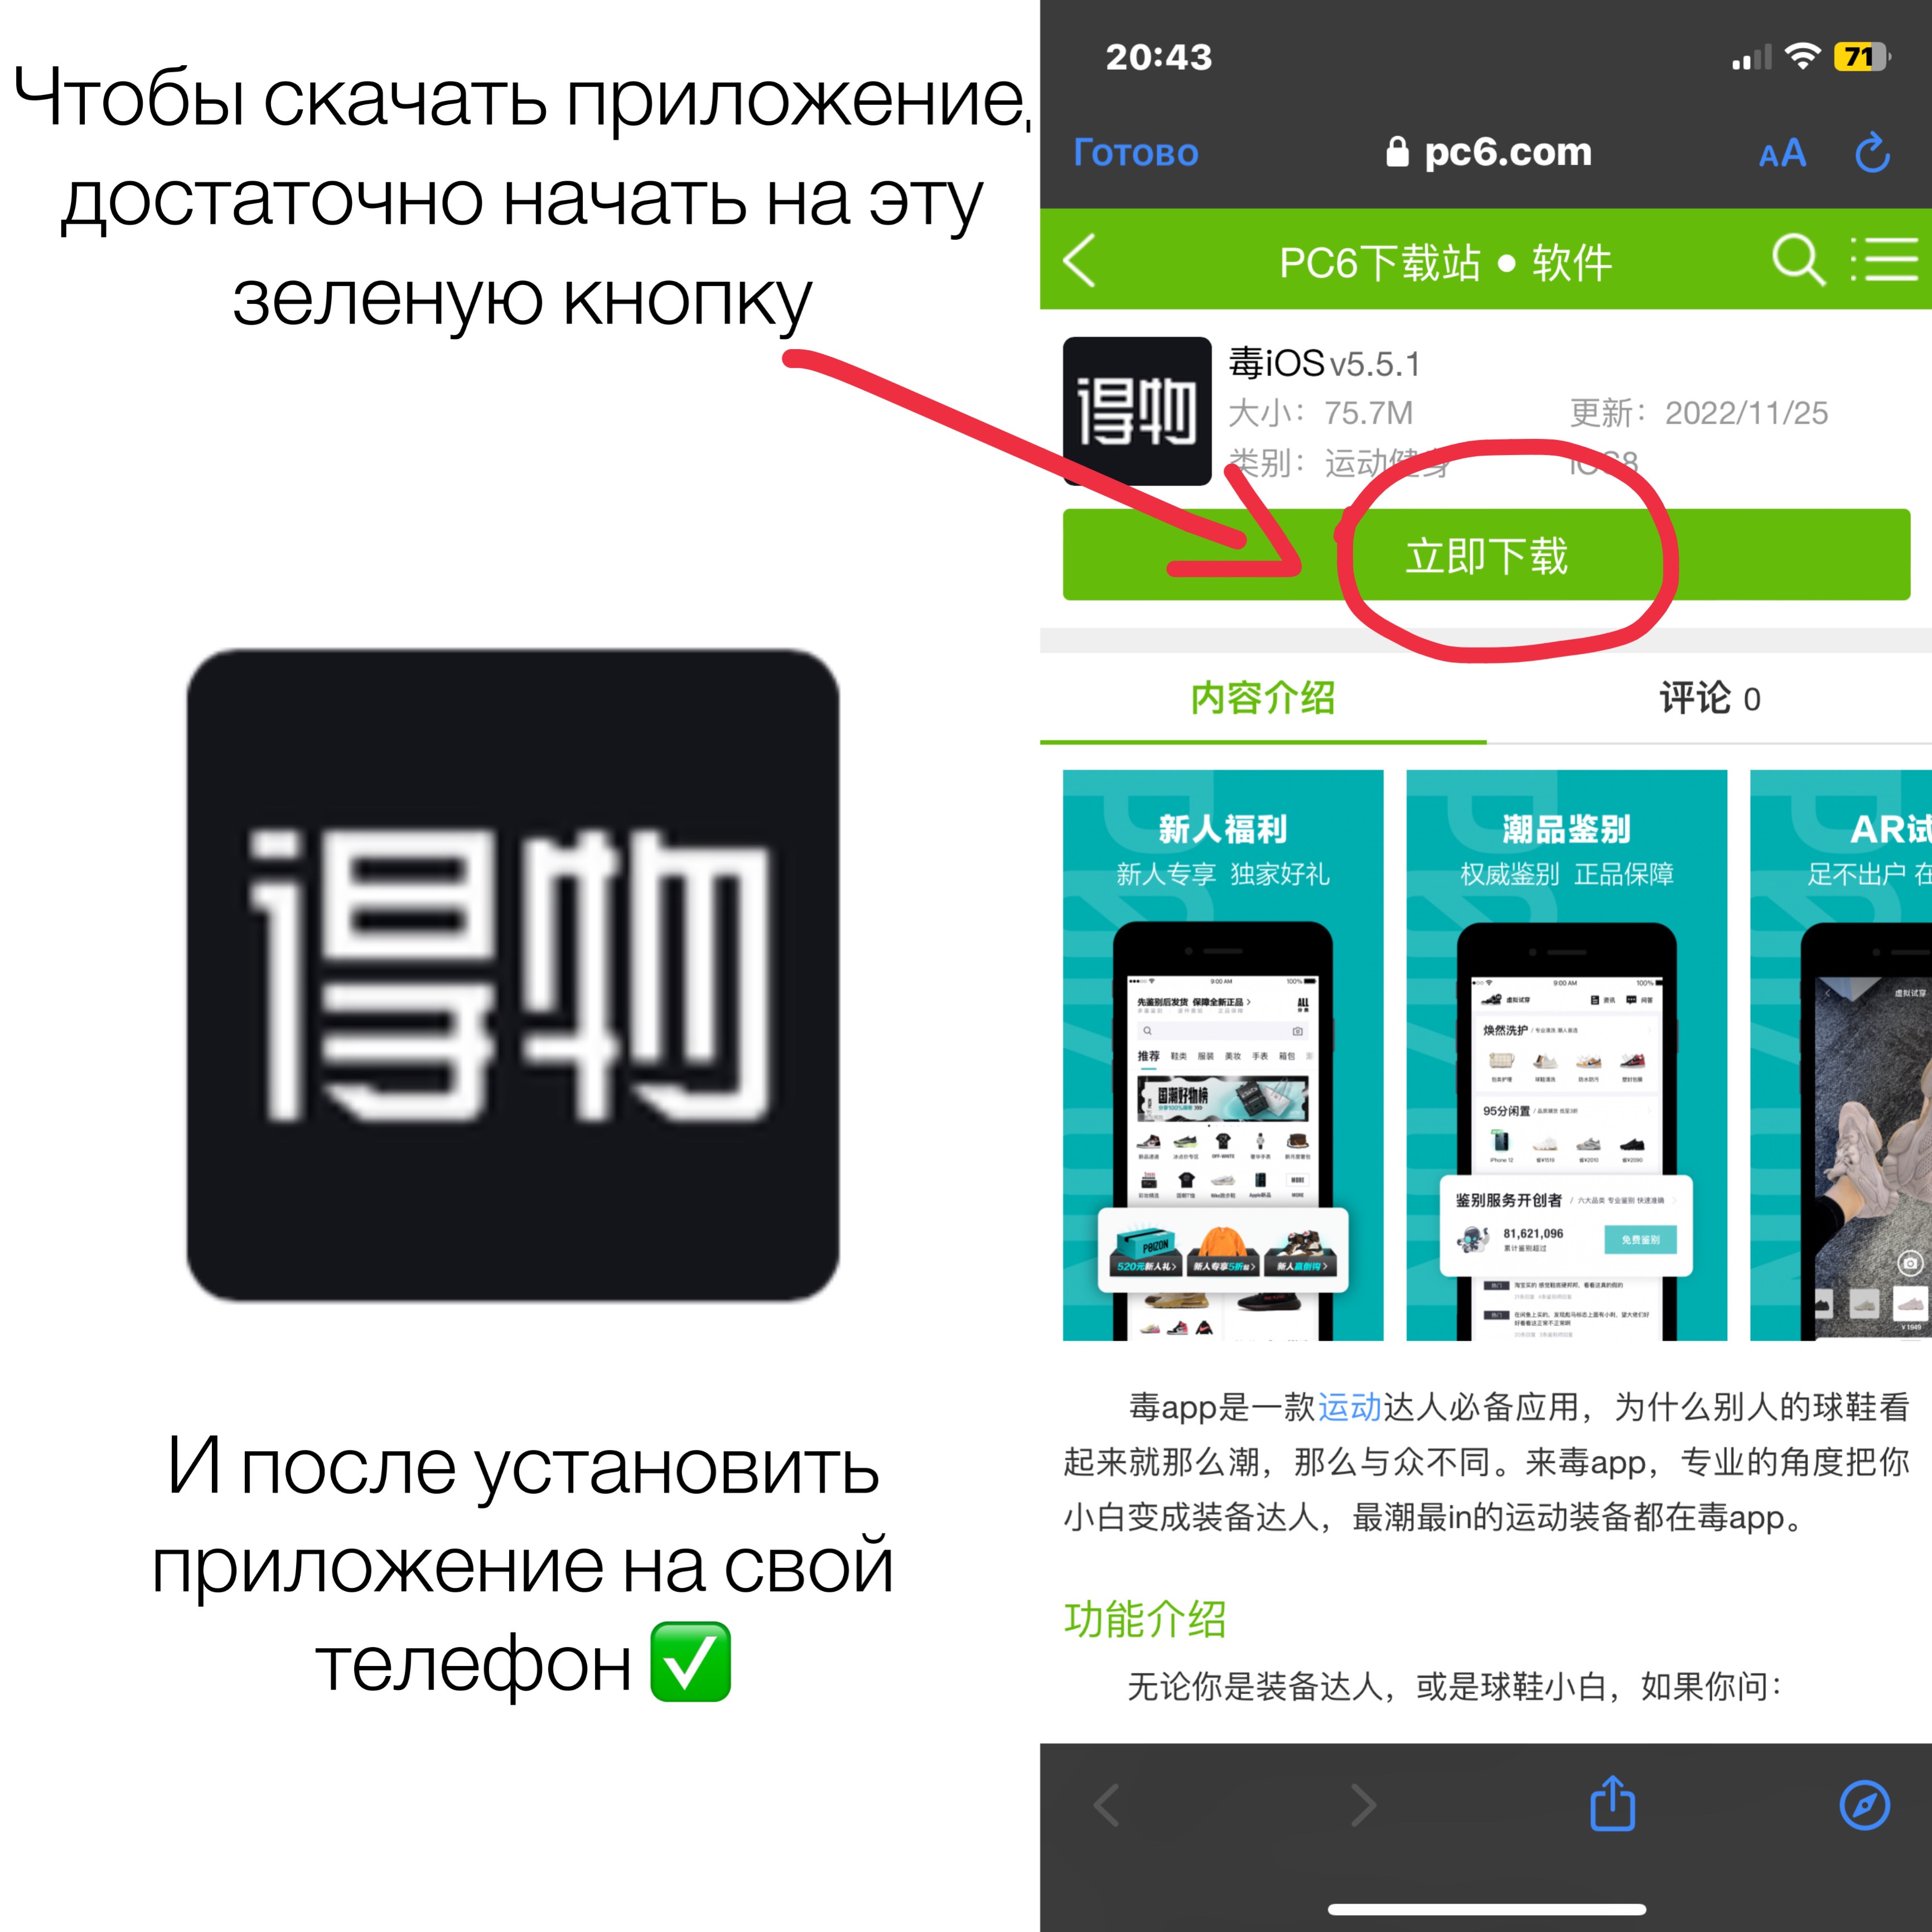 Как поменять язык в пойзоне приложение. Пойзон приложение китайское. Пойзон иконка приложения. Приложение Пойзон на андроид. Poizon приложение андроид.